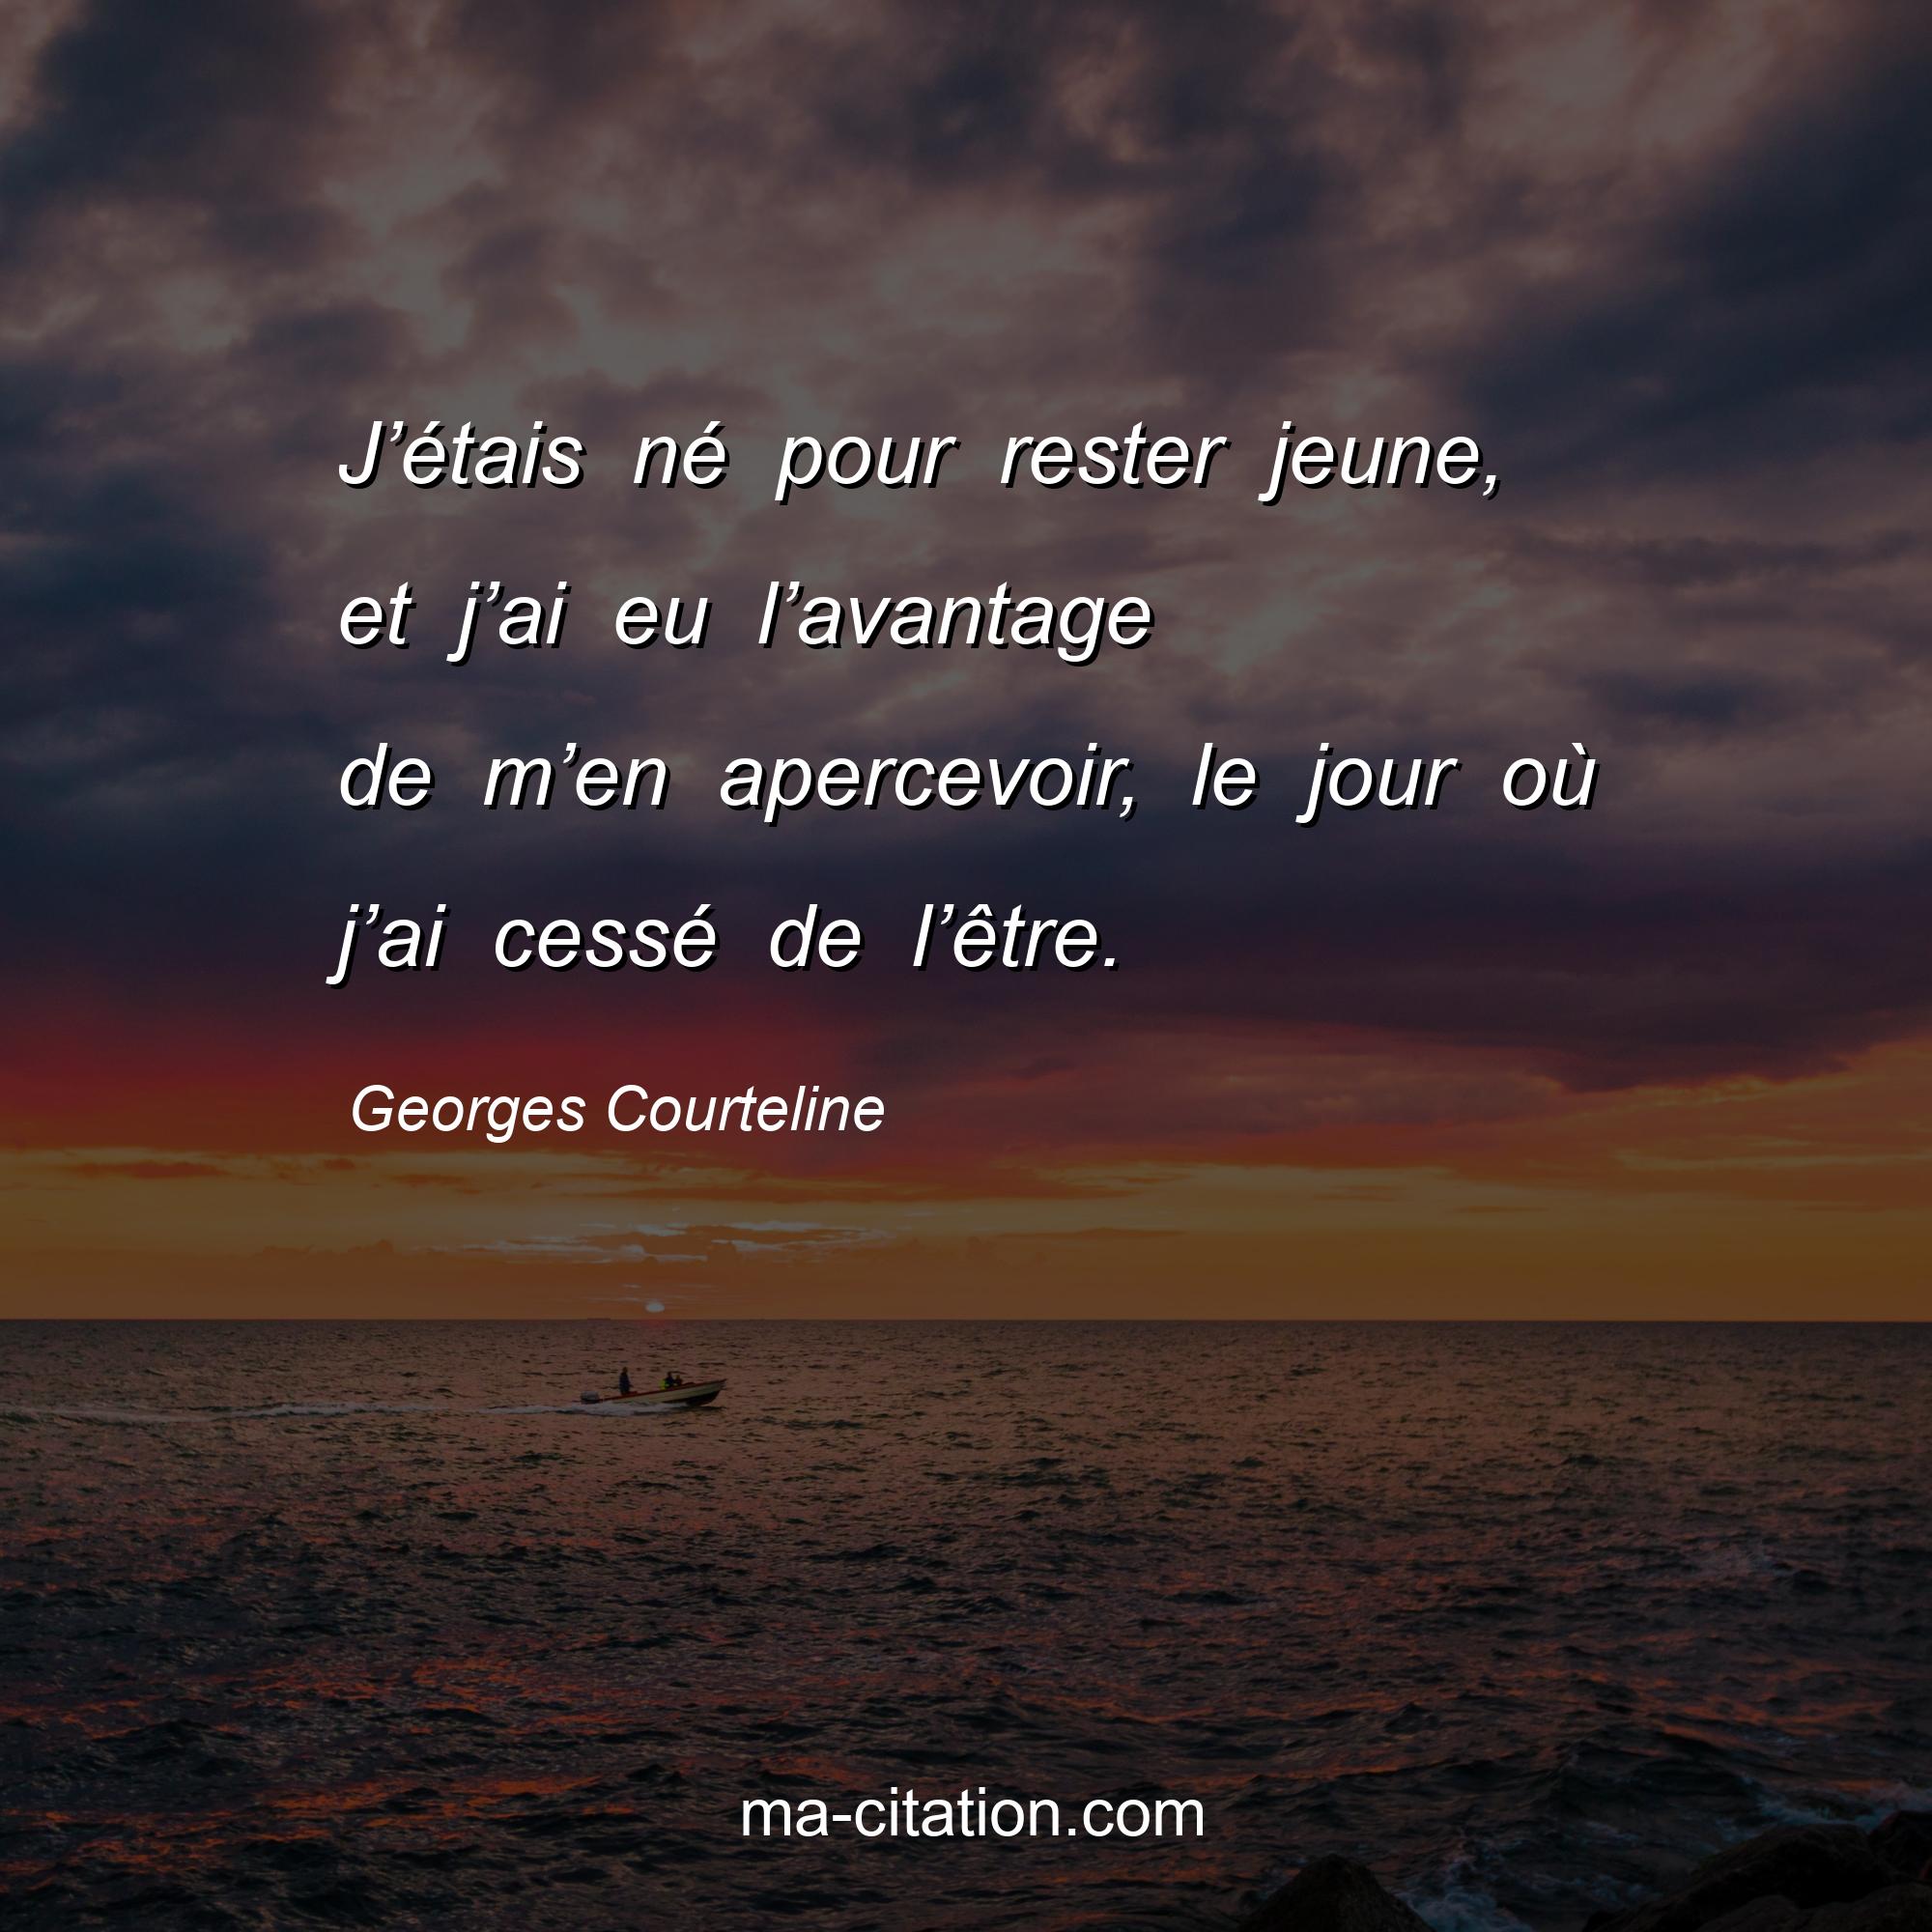 Georges Courteline : J’étais né pour rester jeune, et j’ai eu l’avantage de m’en apercevoir, le jour où j’ai cessé de l’être.